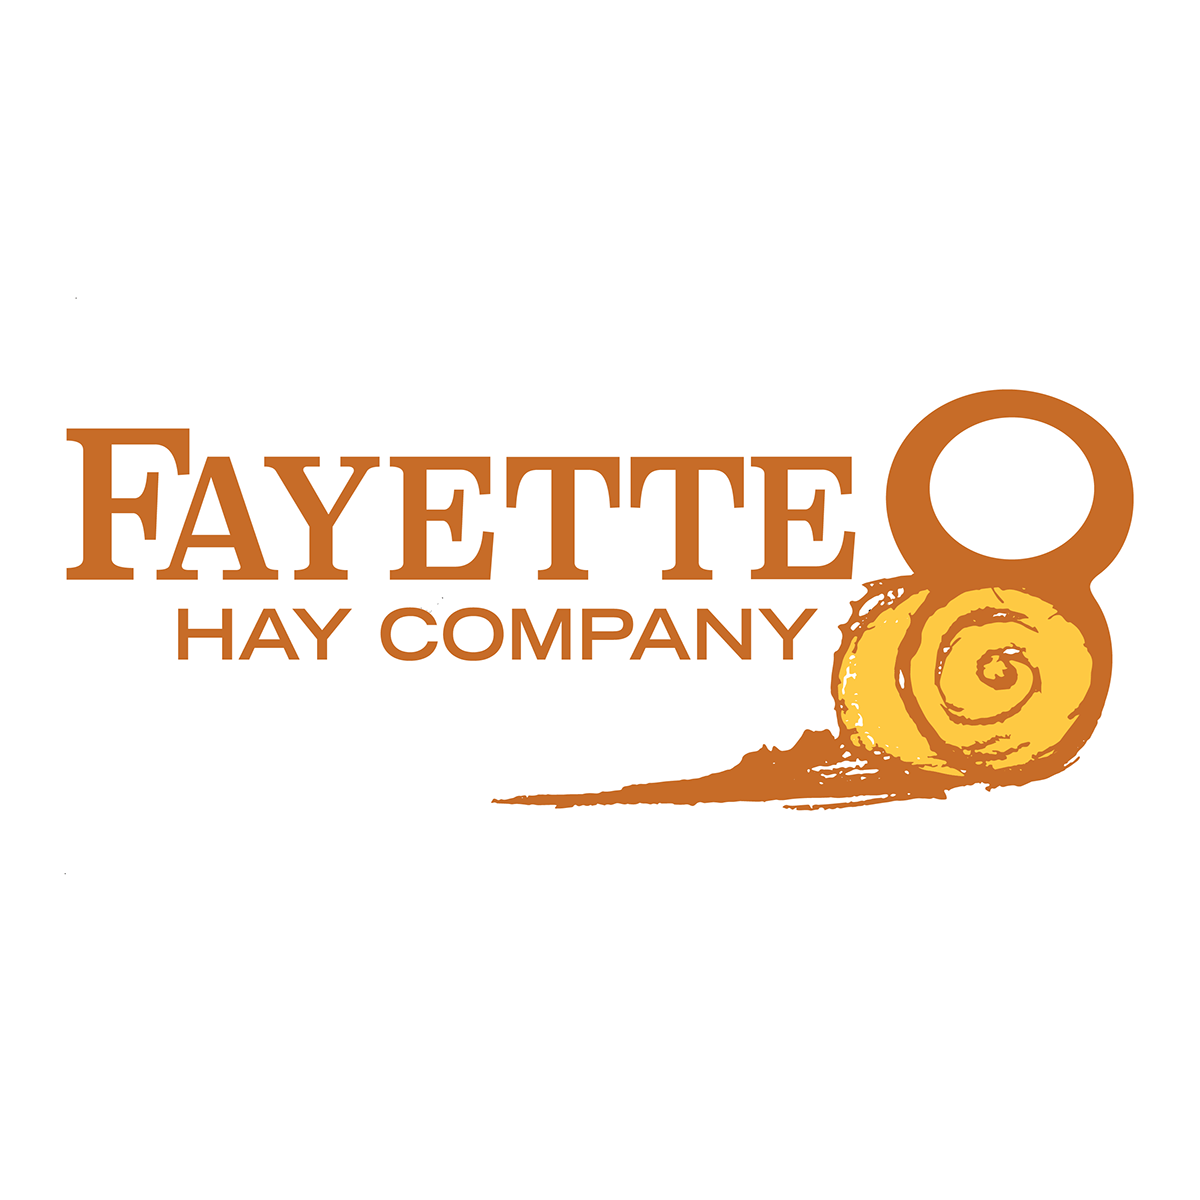 Hay Company Logo - Fayette 8 Hay Company Logo on Behance